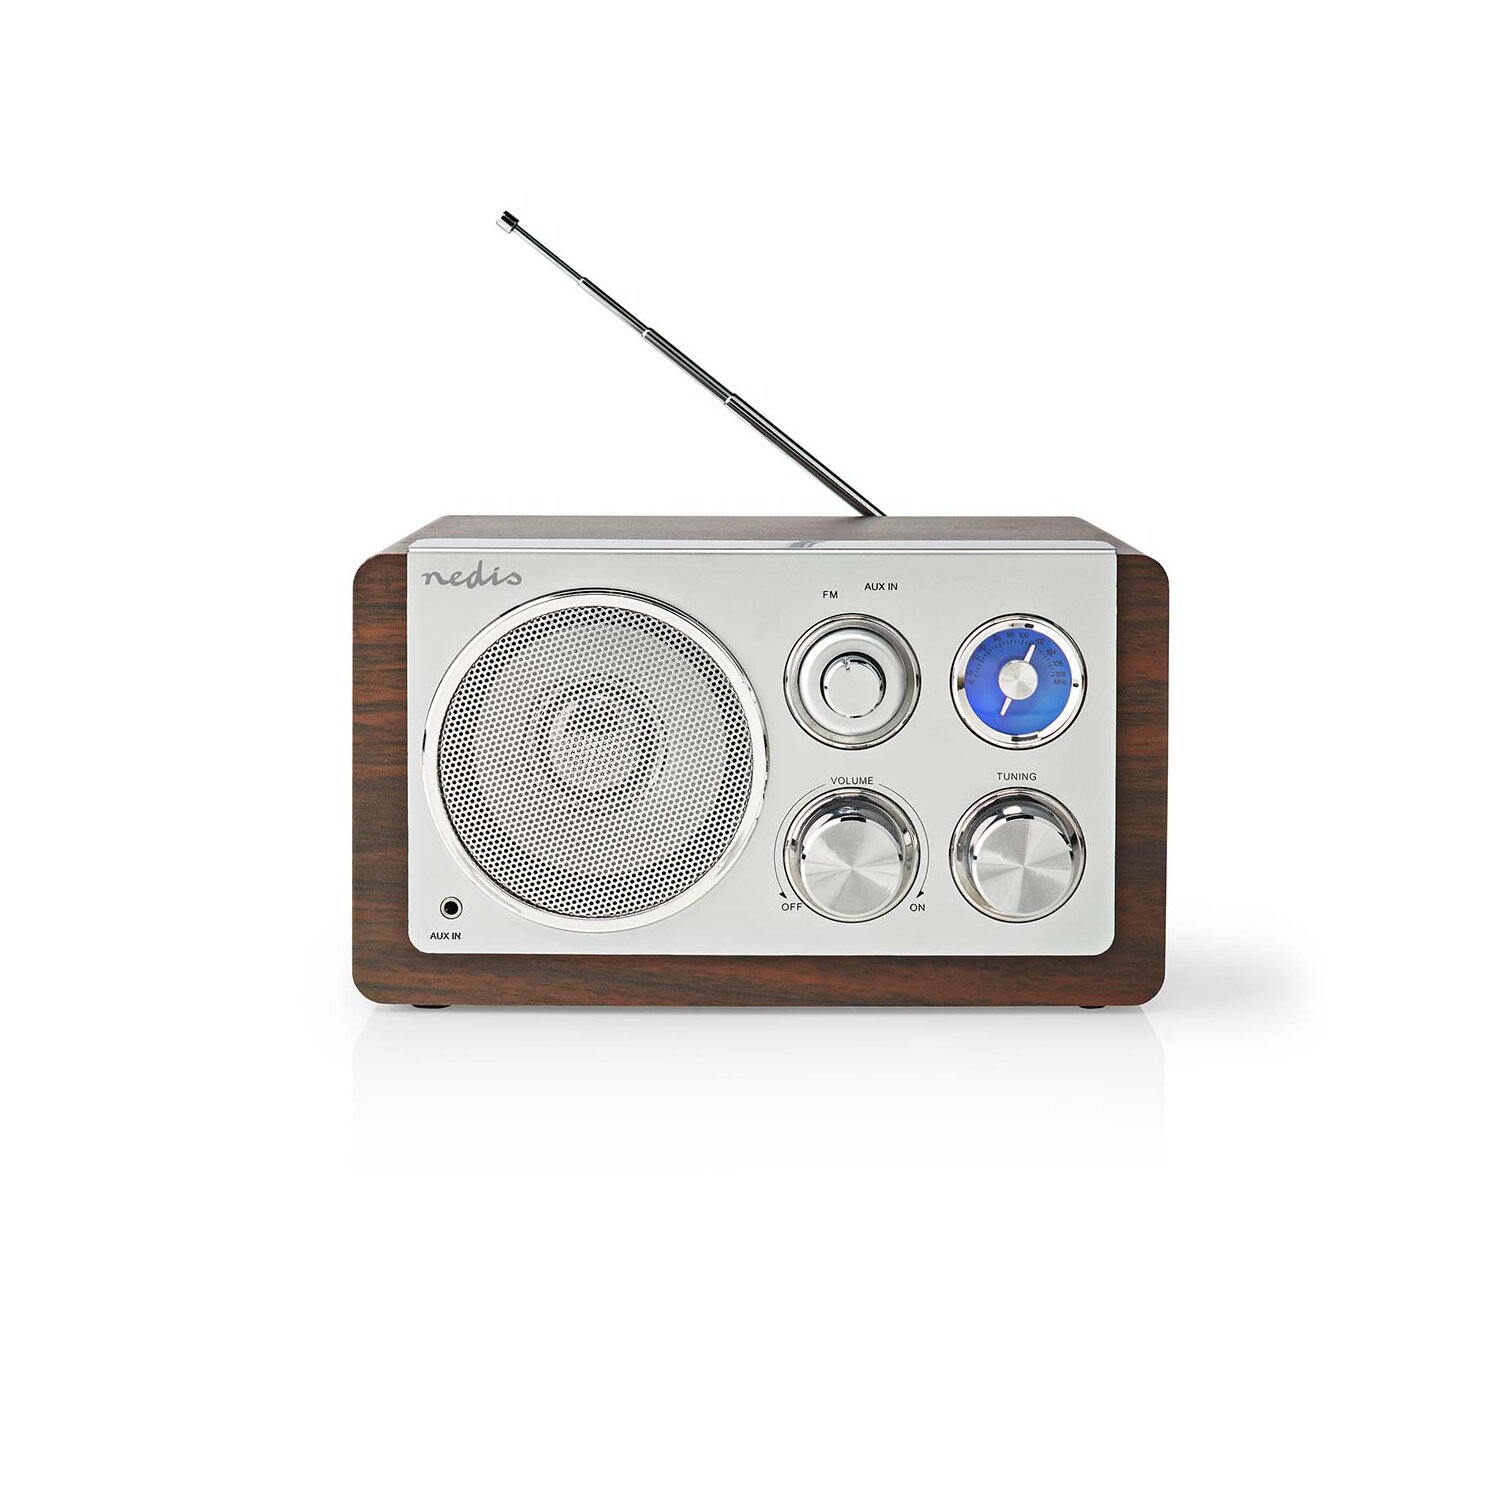 https://www.eurosellonline.de/media/image/product/160358/lg/retro-design-analog-ukw-fm-radio-tisch-holz-design-braun.jpg